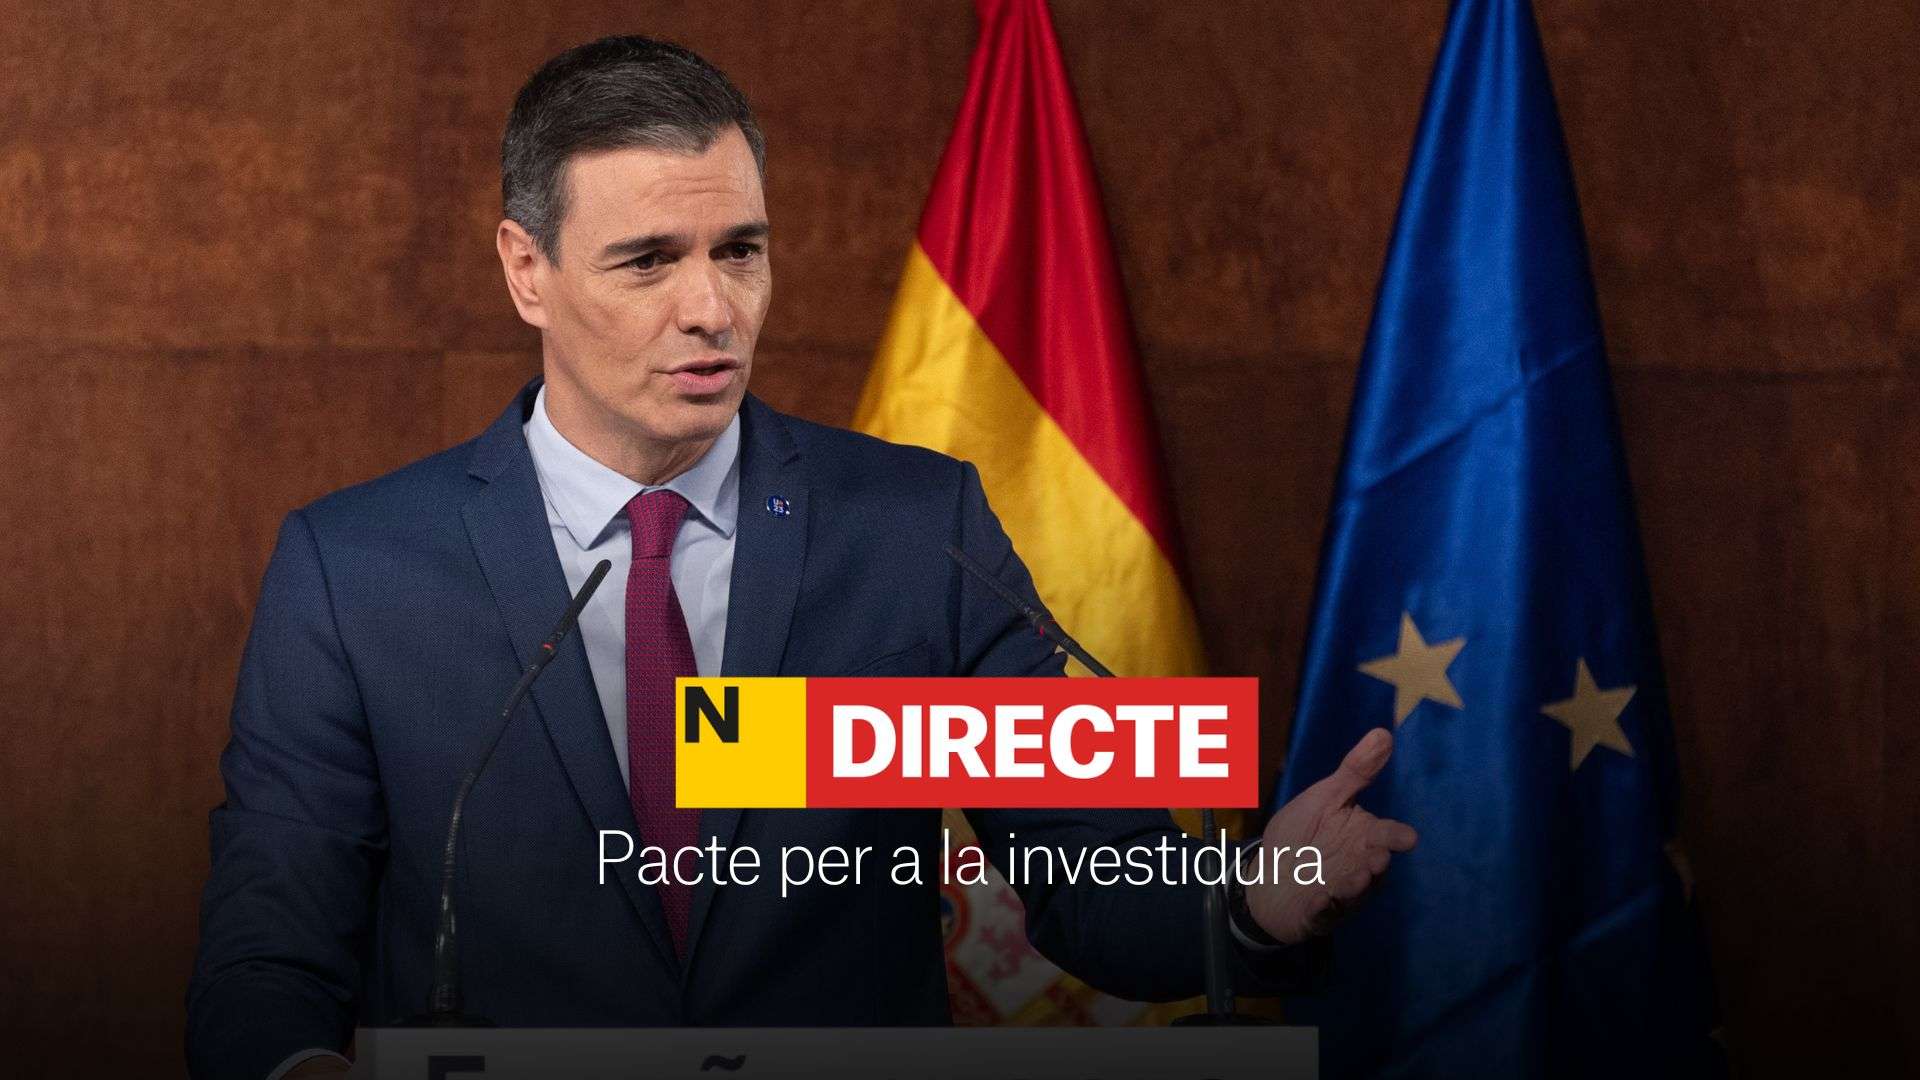 Pactes i acords per a la investidura de Pedro Sánchez, DIRECTE | Últimes notícies del 10 de novembre